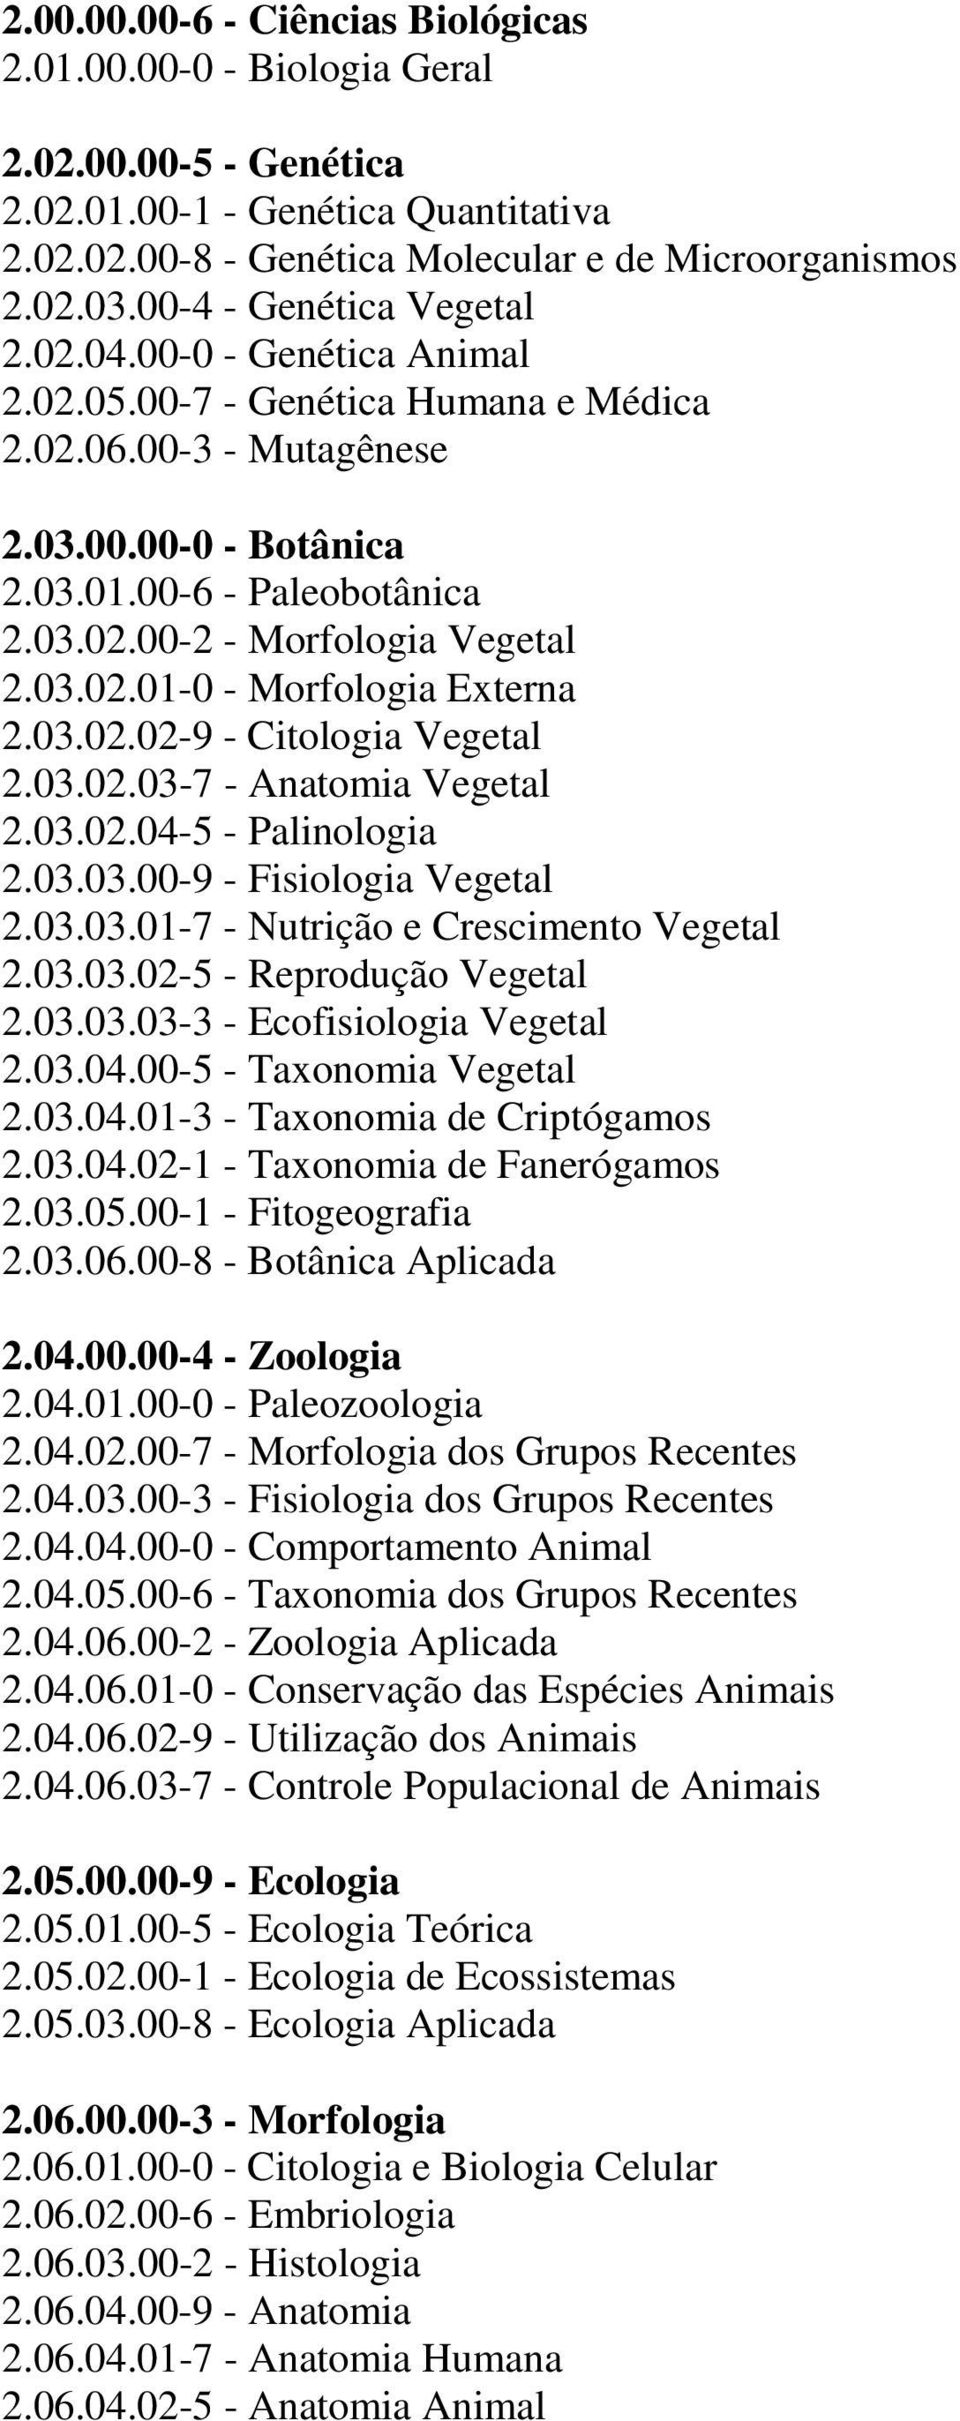 03.02.01-0 - Morfologia Externa 2.03.02.02-9 - Citologia Vegetal 2.03.02.03-7 - Anatomia Vegetal 2.03.02.04-5 - Palinologia 2.03.03.00-9 - Fisiologia Vegetal 2.03.03.01-7 - Nutrição e Crescimento Vegetal 2.